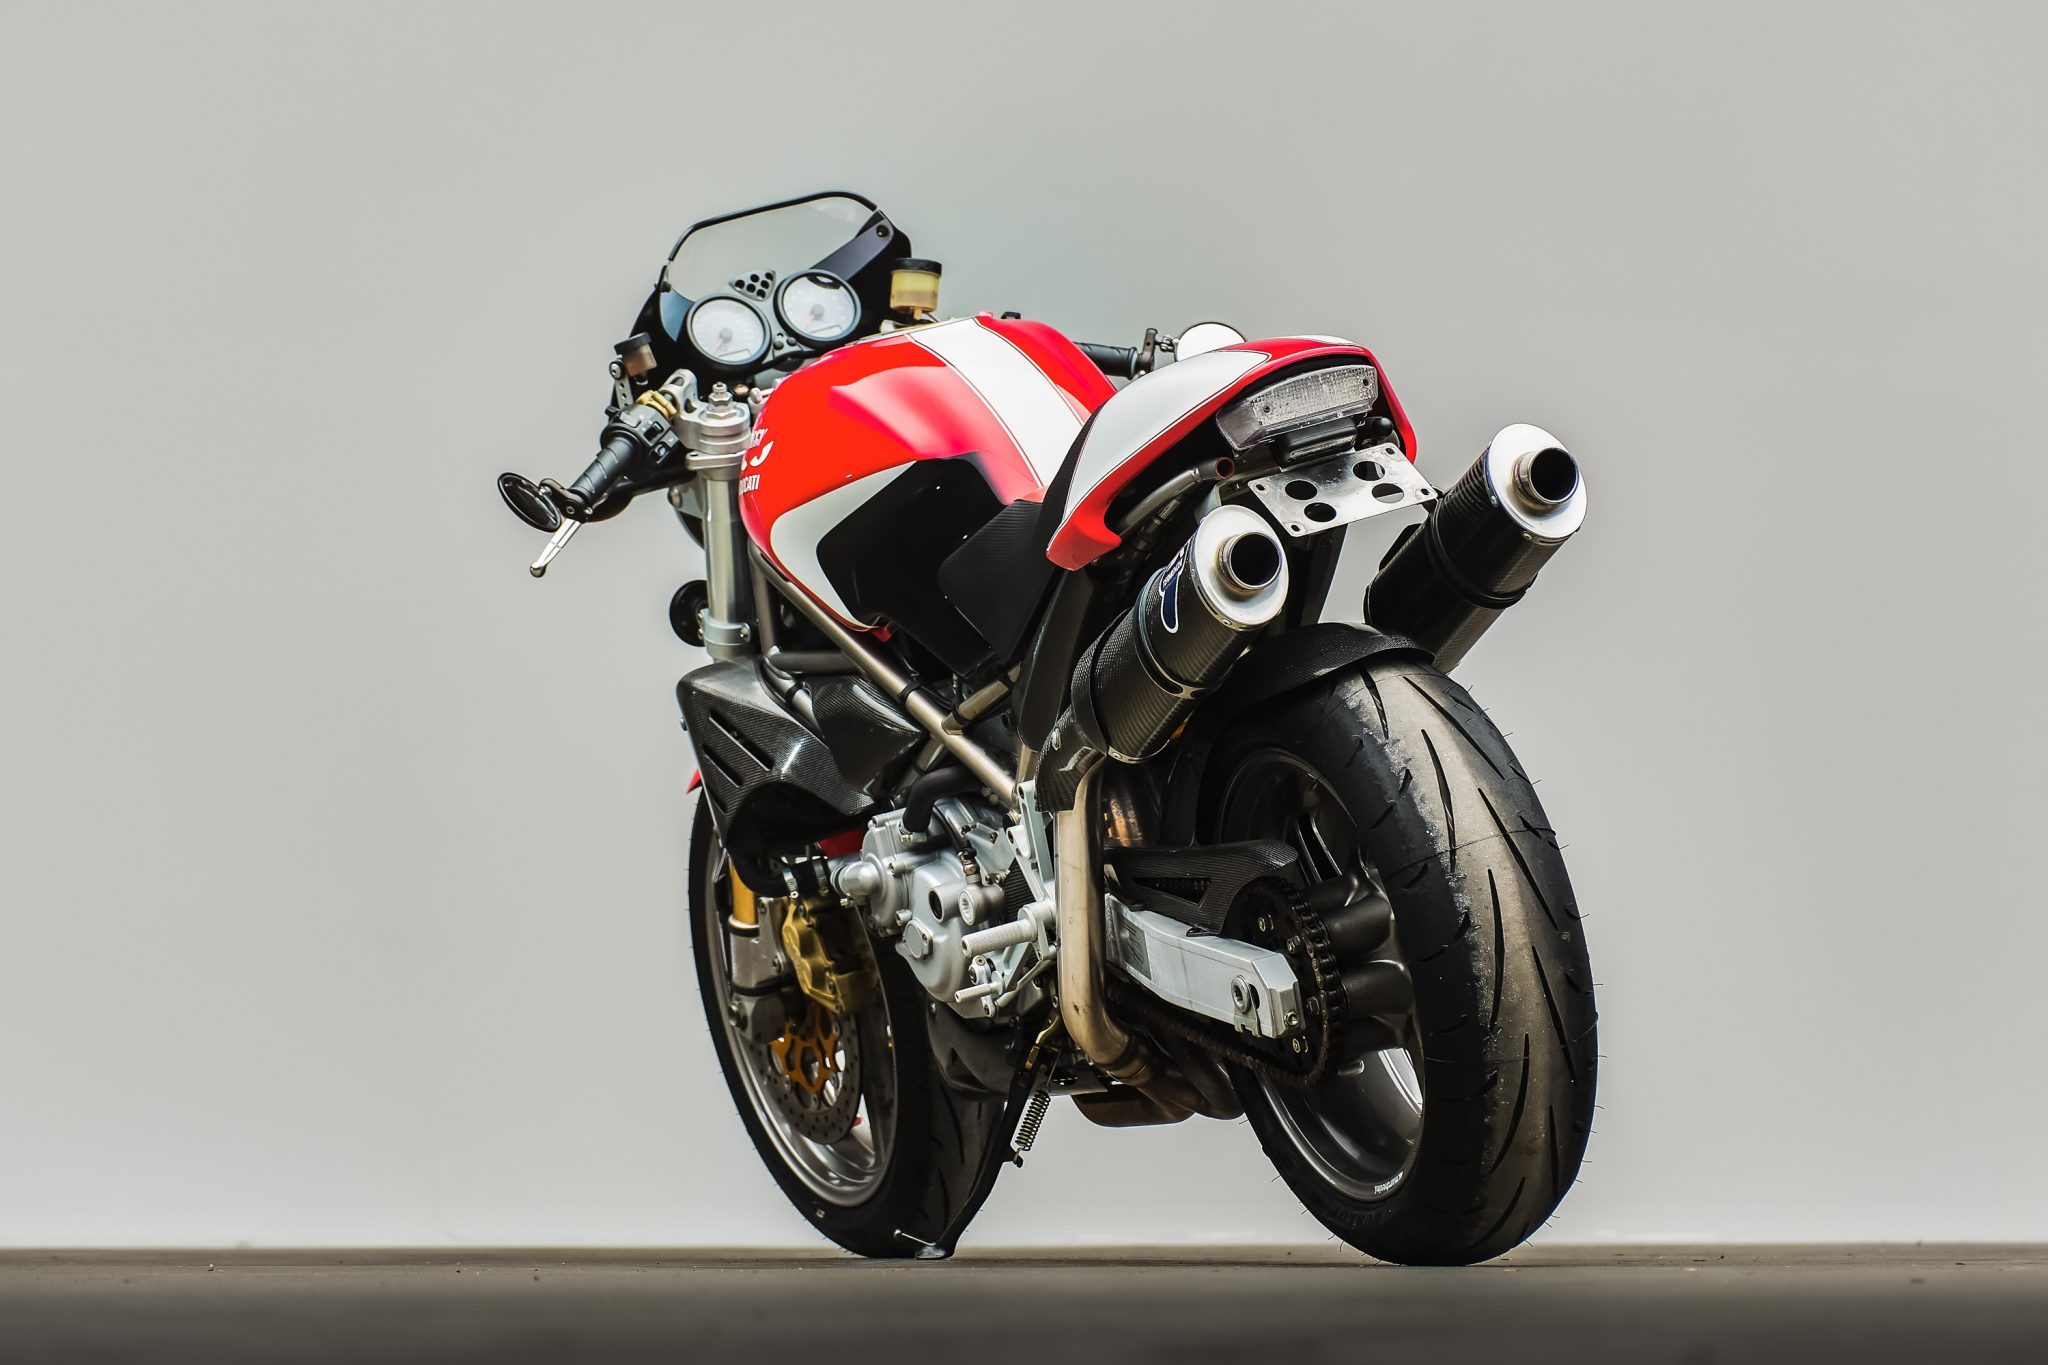 Скачать обои Ducati Monster S4 Фогарти Издание на телефон бесплатно